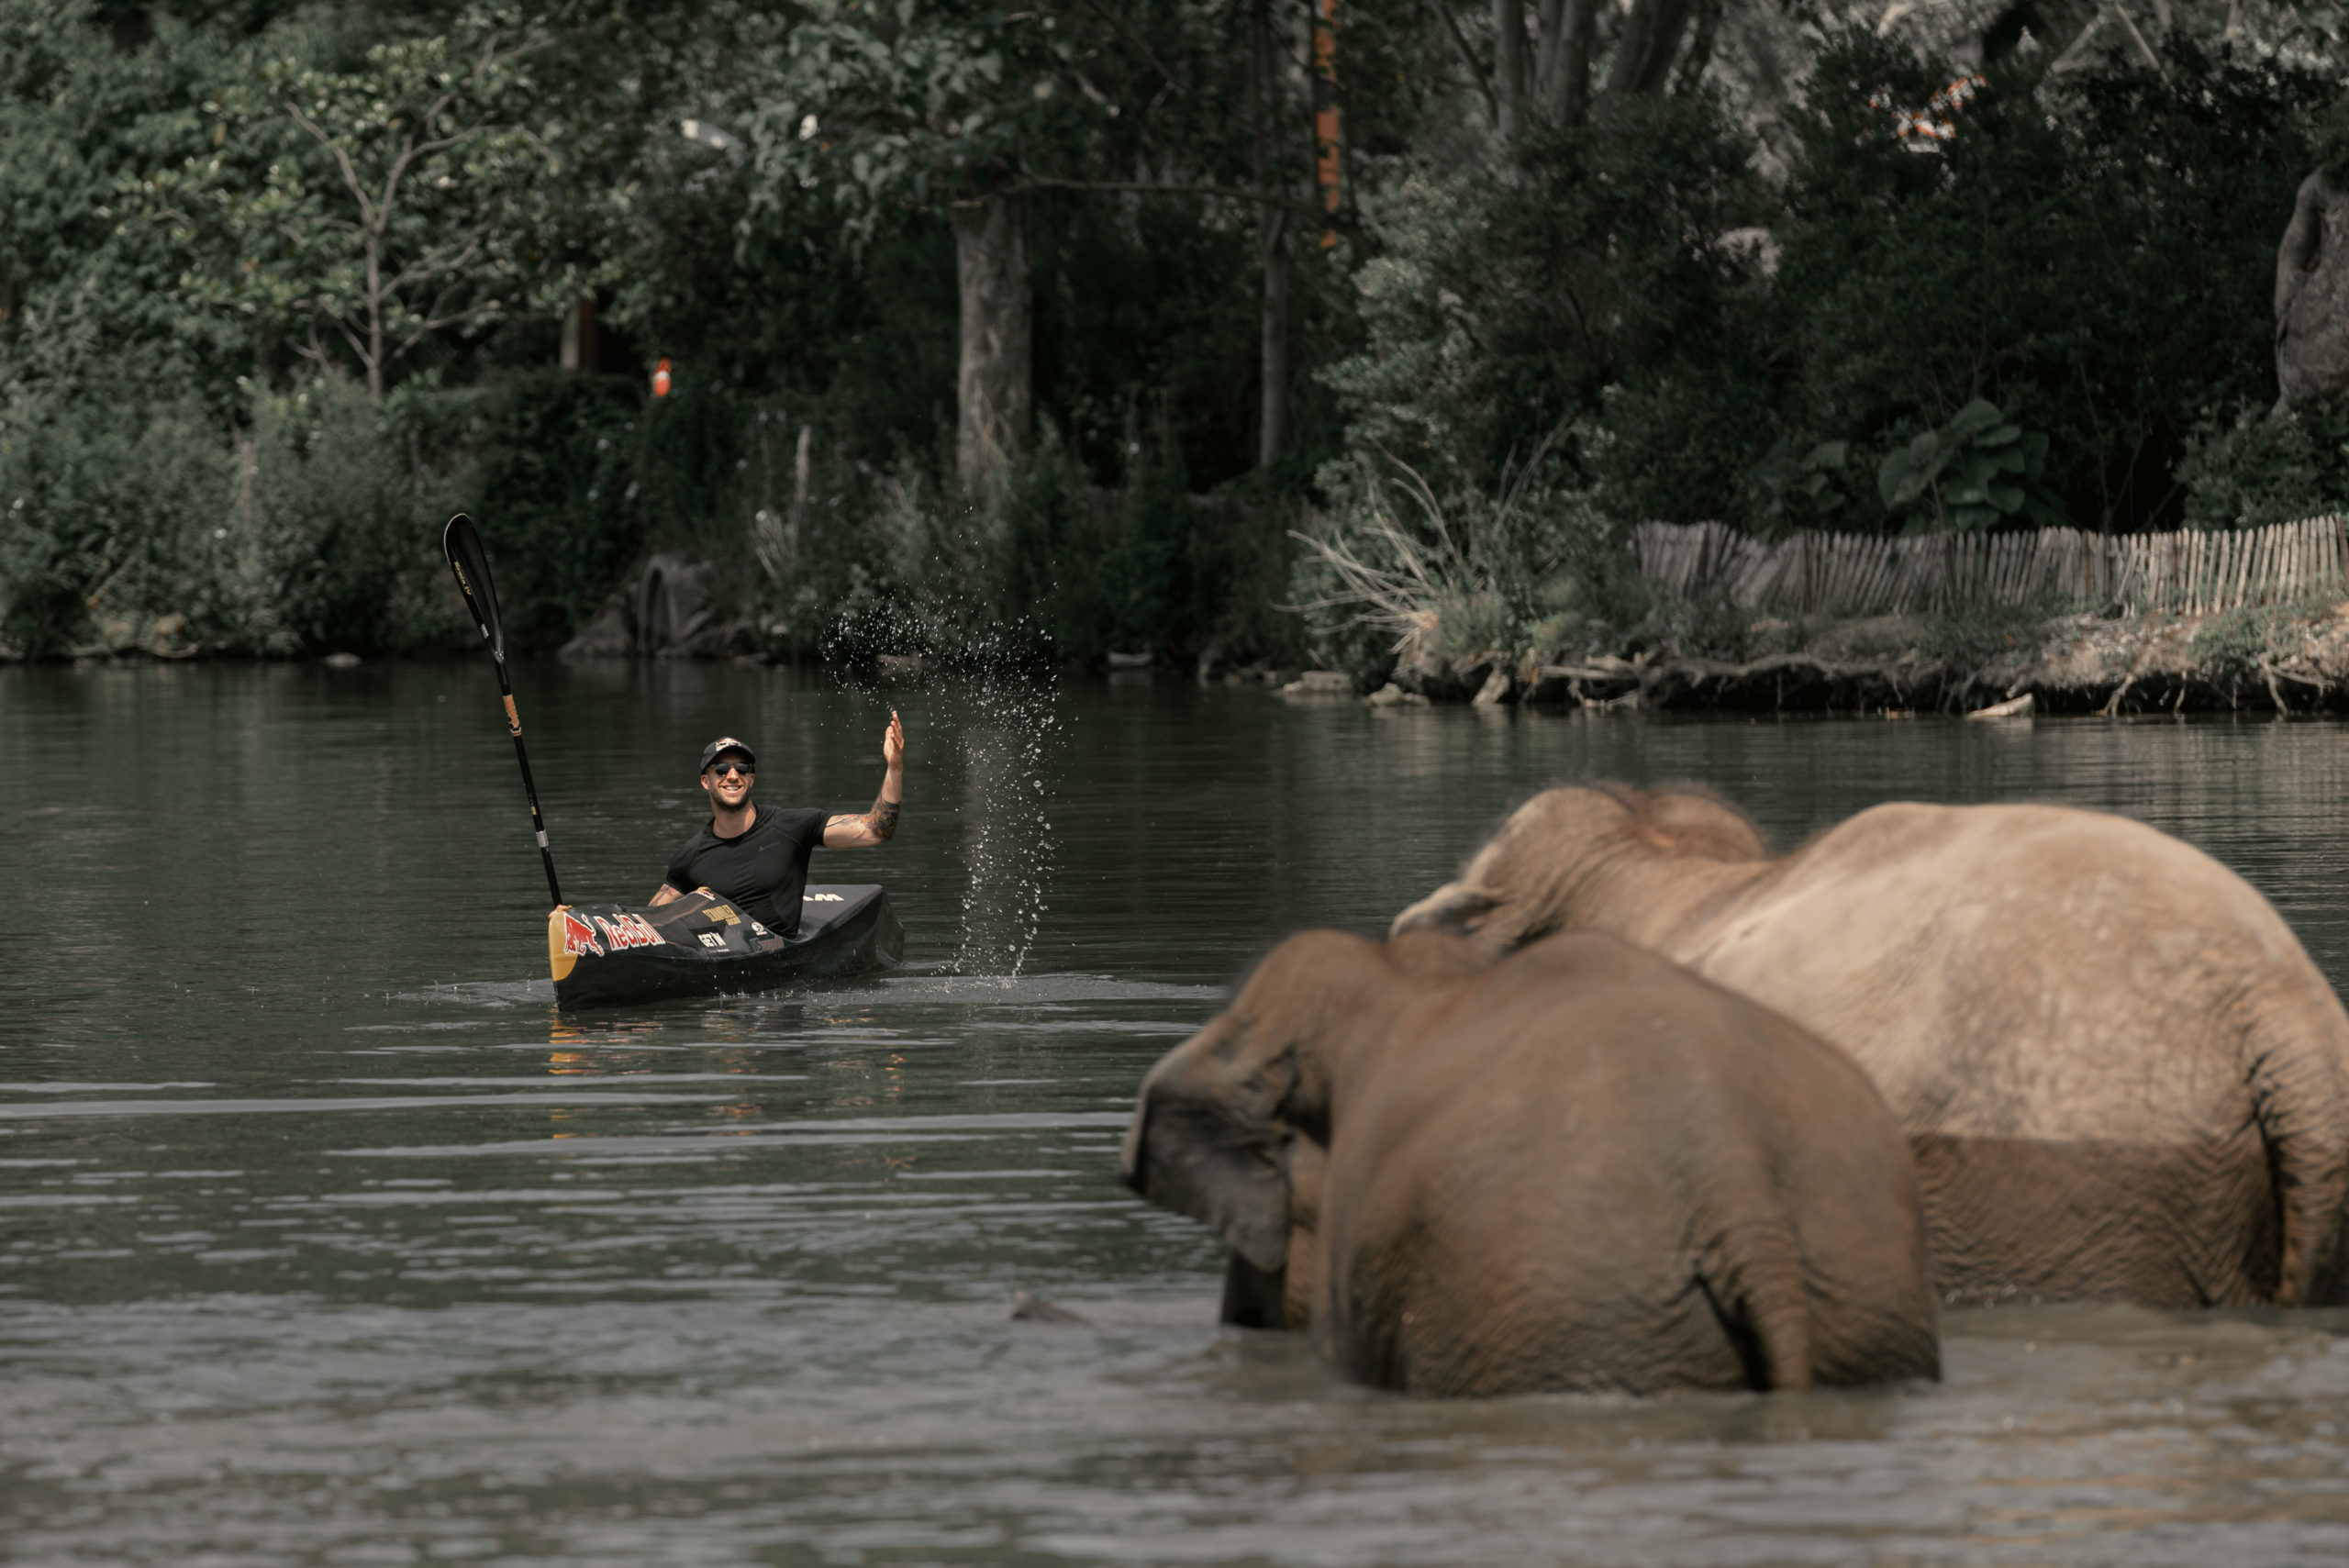 Pendant l’été, les éléphants de Pairi Daiza descendent au lac tous les jours, en début d’après-midi pour se baigner